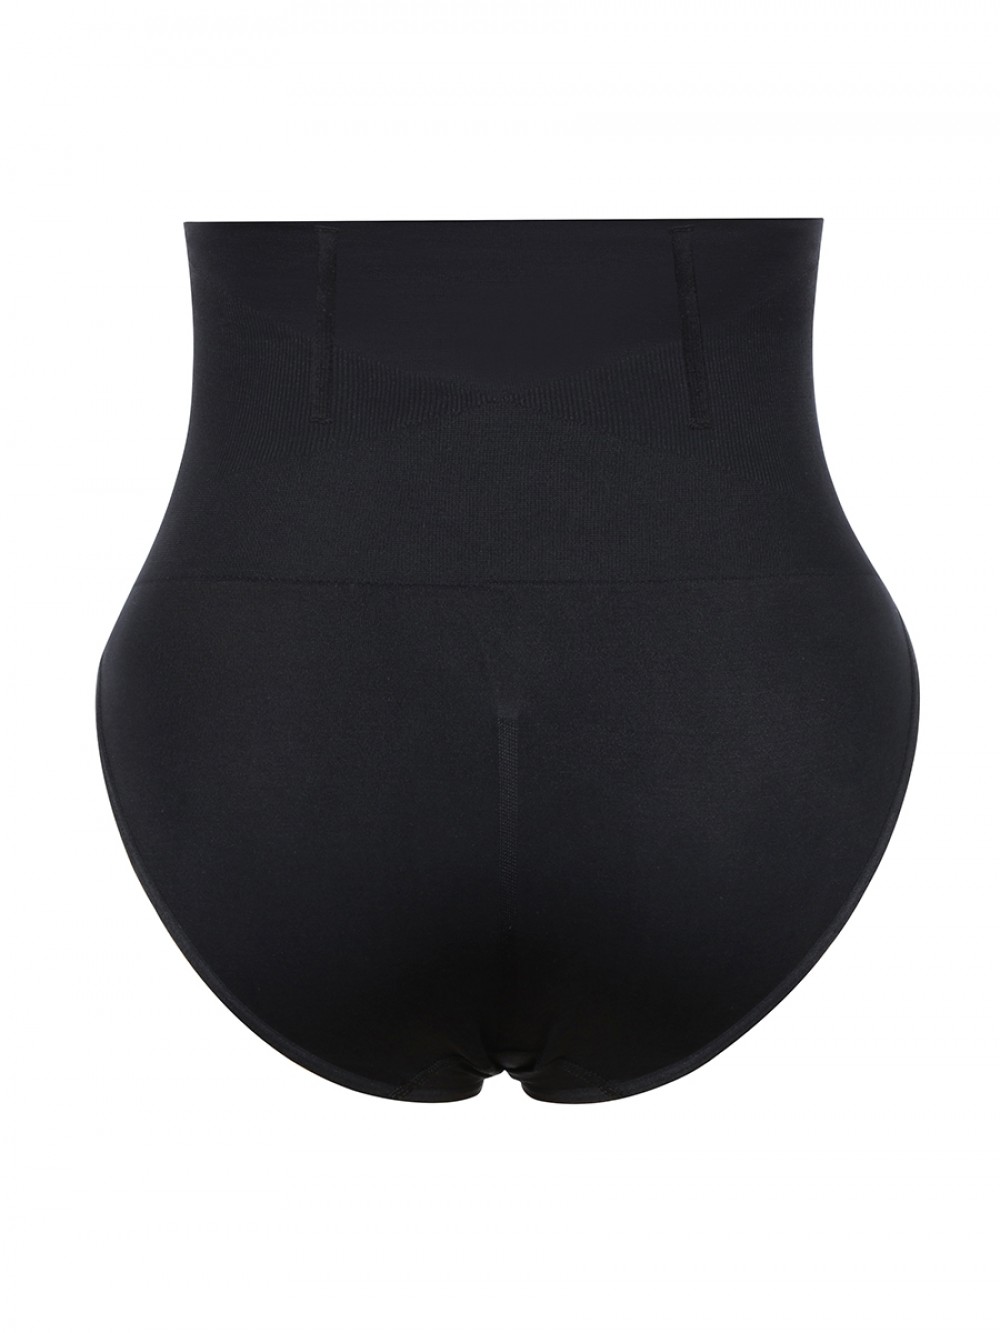 Black Seamless Plus Size Butt Lifter High Waist Figure Shaping